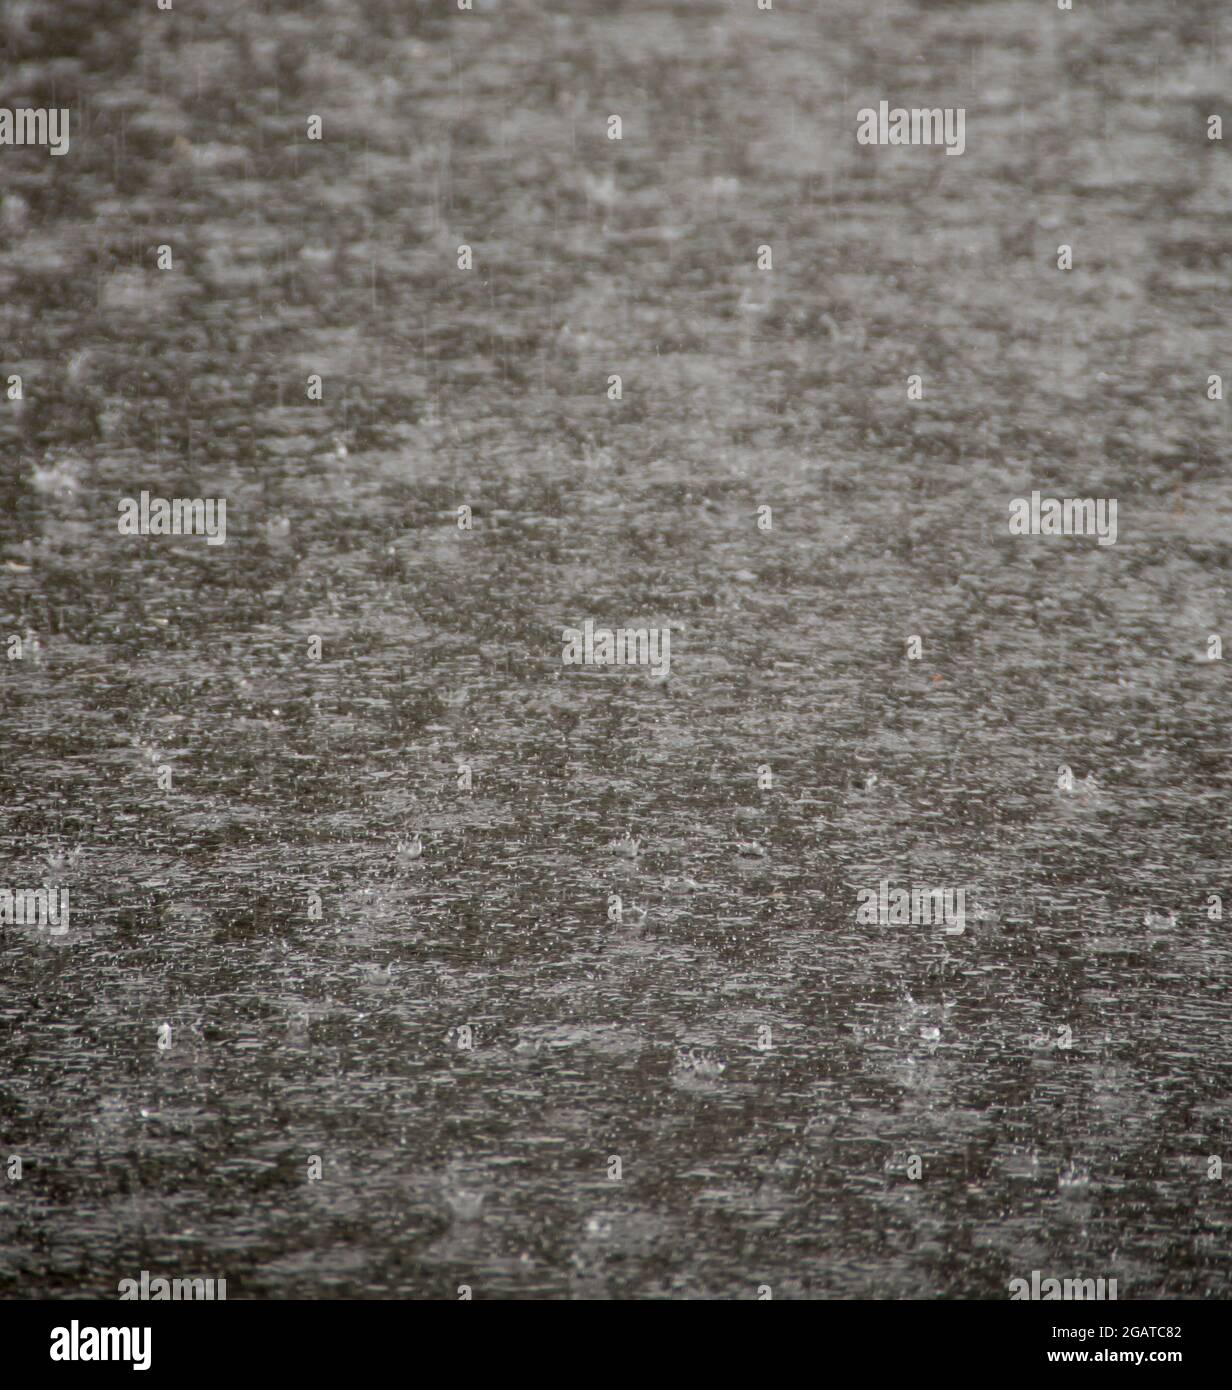 Forti precipitazioni subtropicali che si spriglono sul vialetto nero di asfalto nel giardino, Queensland, Australia. Sfondo, spazio di copia. Foto Stock